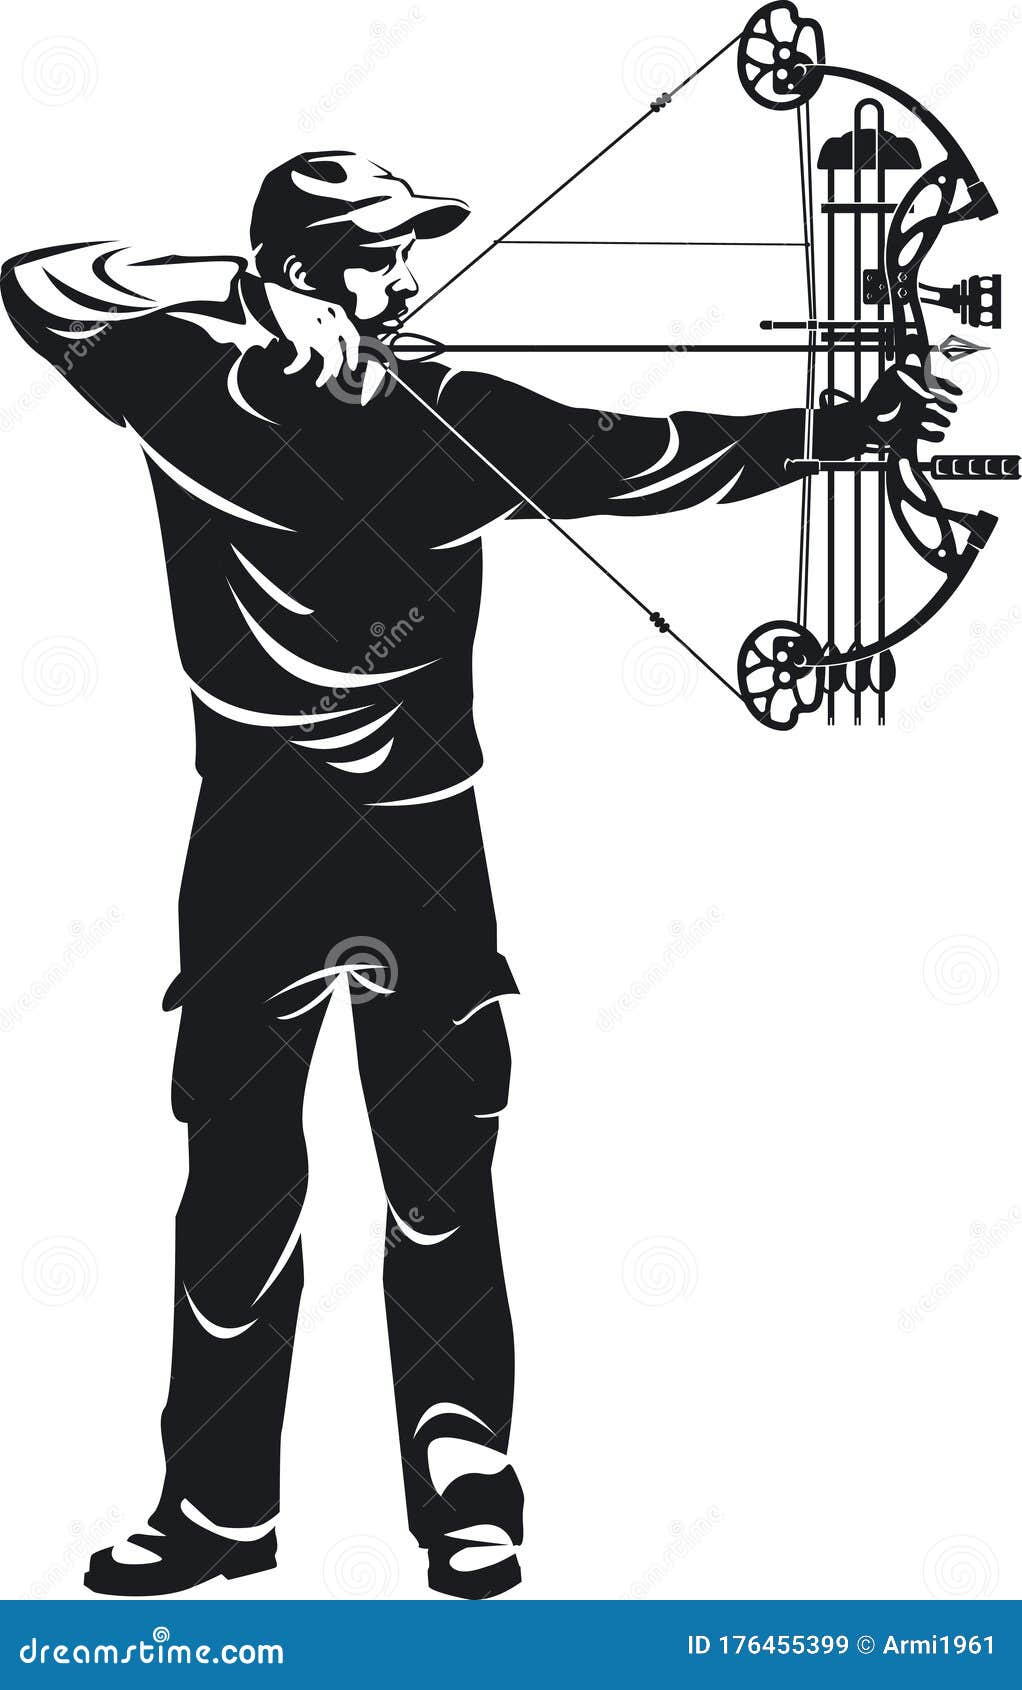 Archery Toronto: Awesome Archery Tattoo